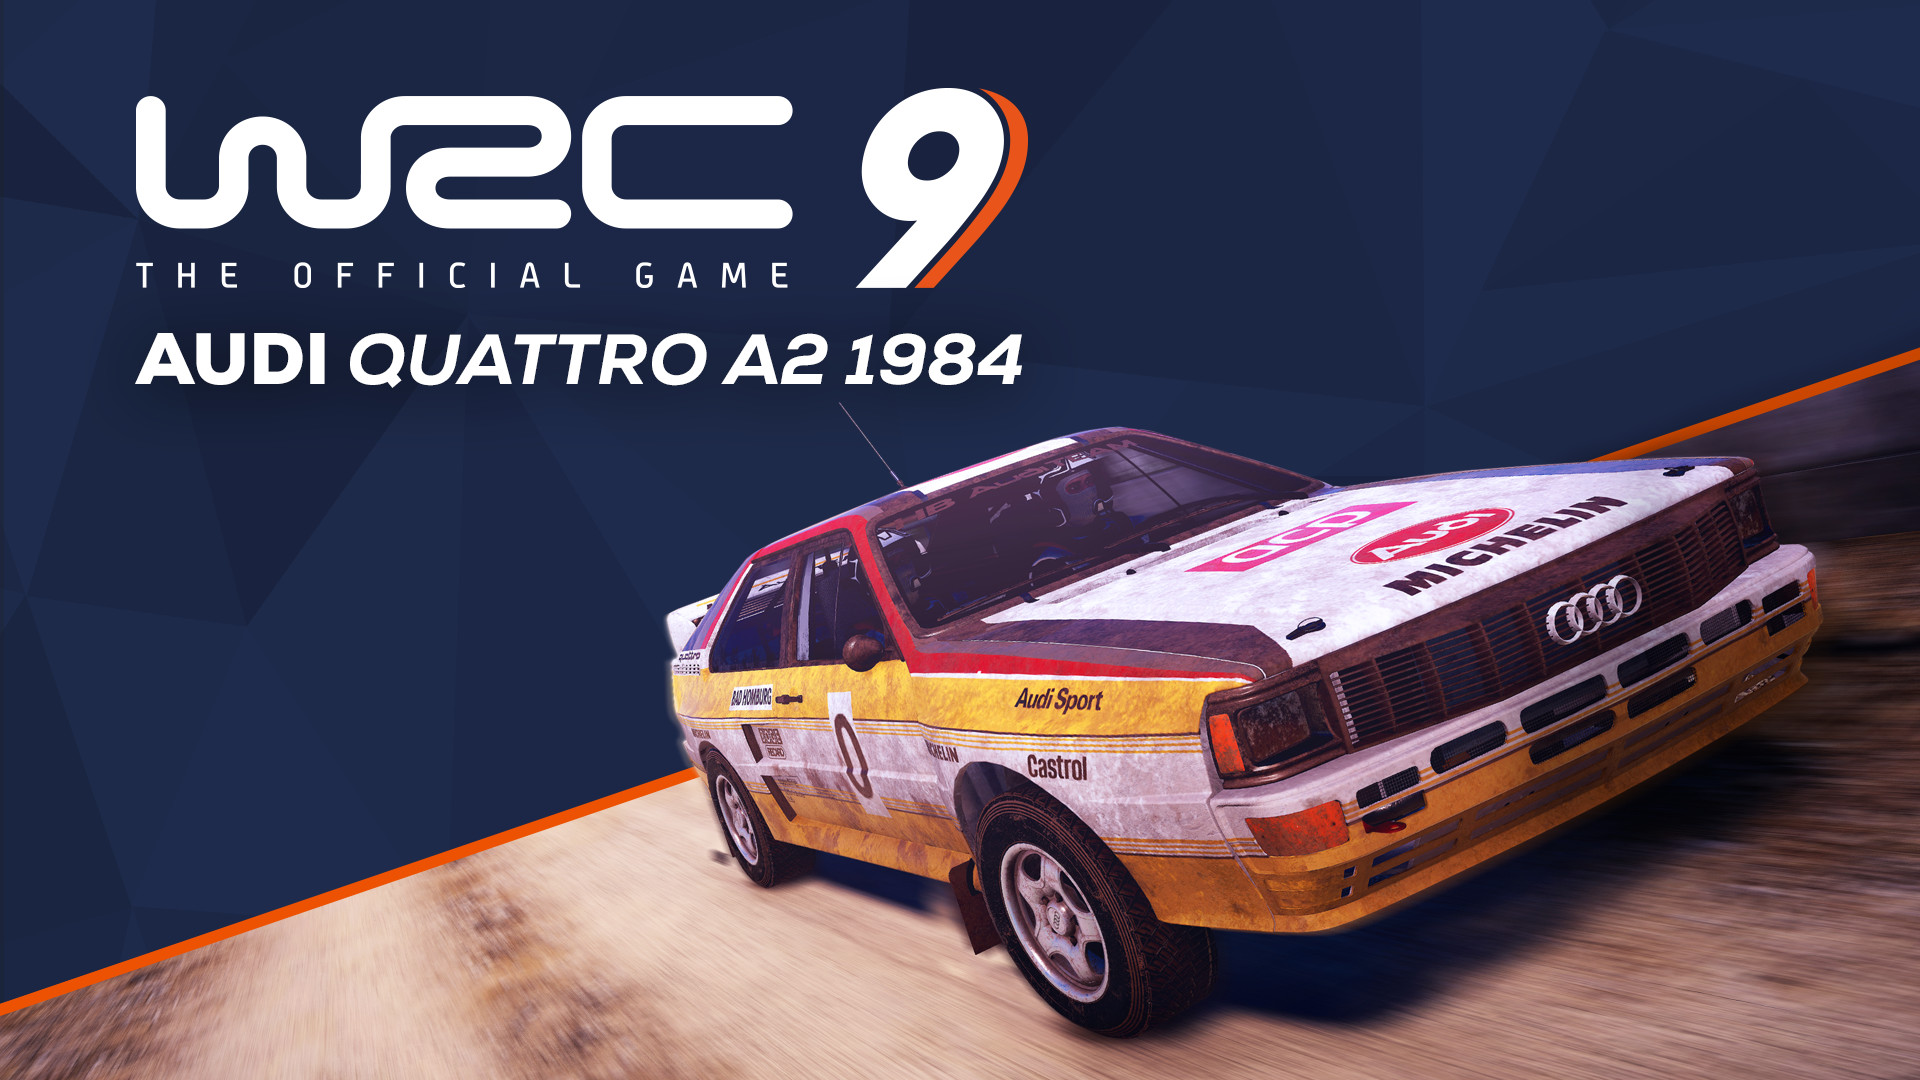 WRC 9 - Audi Quattro A2 1984 DLC Steam CD Key 1.83$